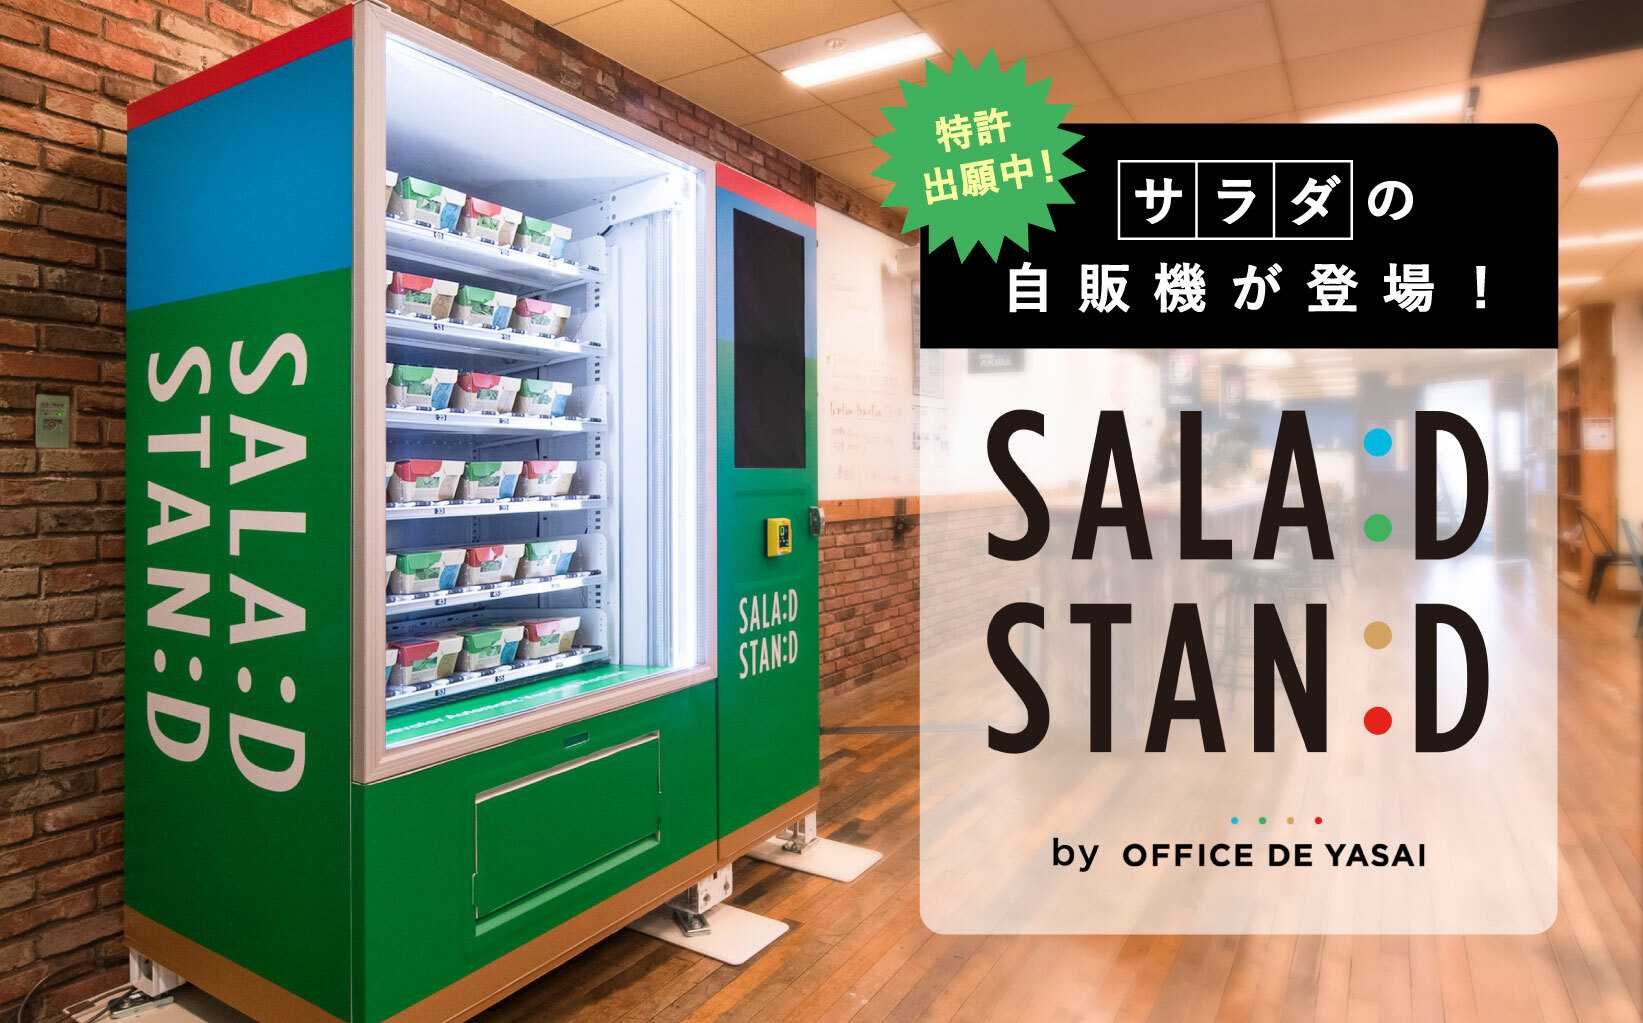 有機 無農薬野菜にこだわったサラダの自動販売機 Salad Stand サラダスタンド が登場 特許出願中の ダイナミックプライシング機能 を搭載予定 株式会社kompeitoのプレスリリース